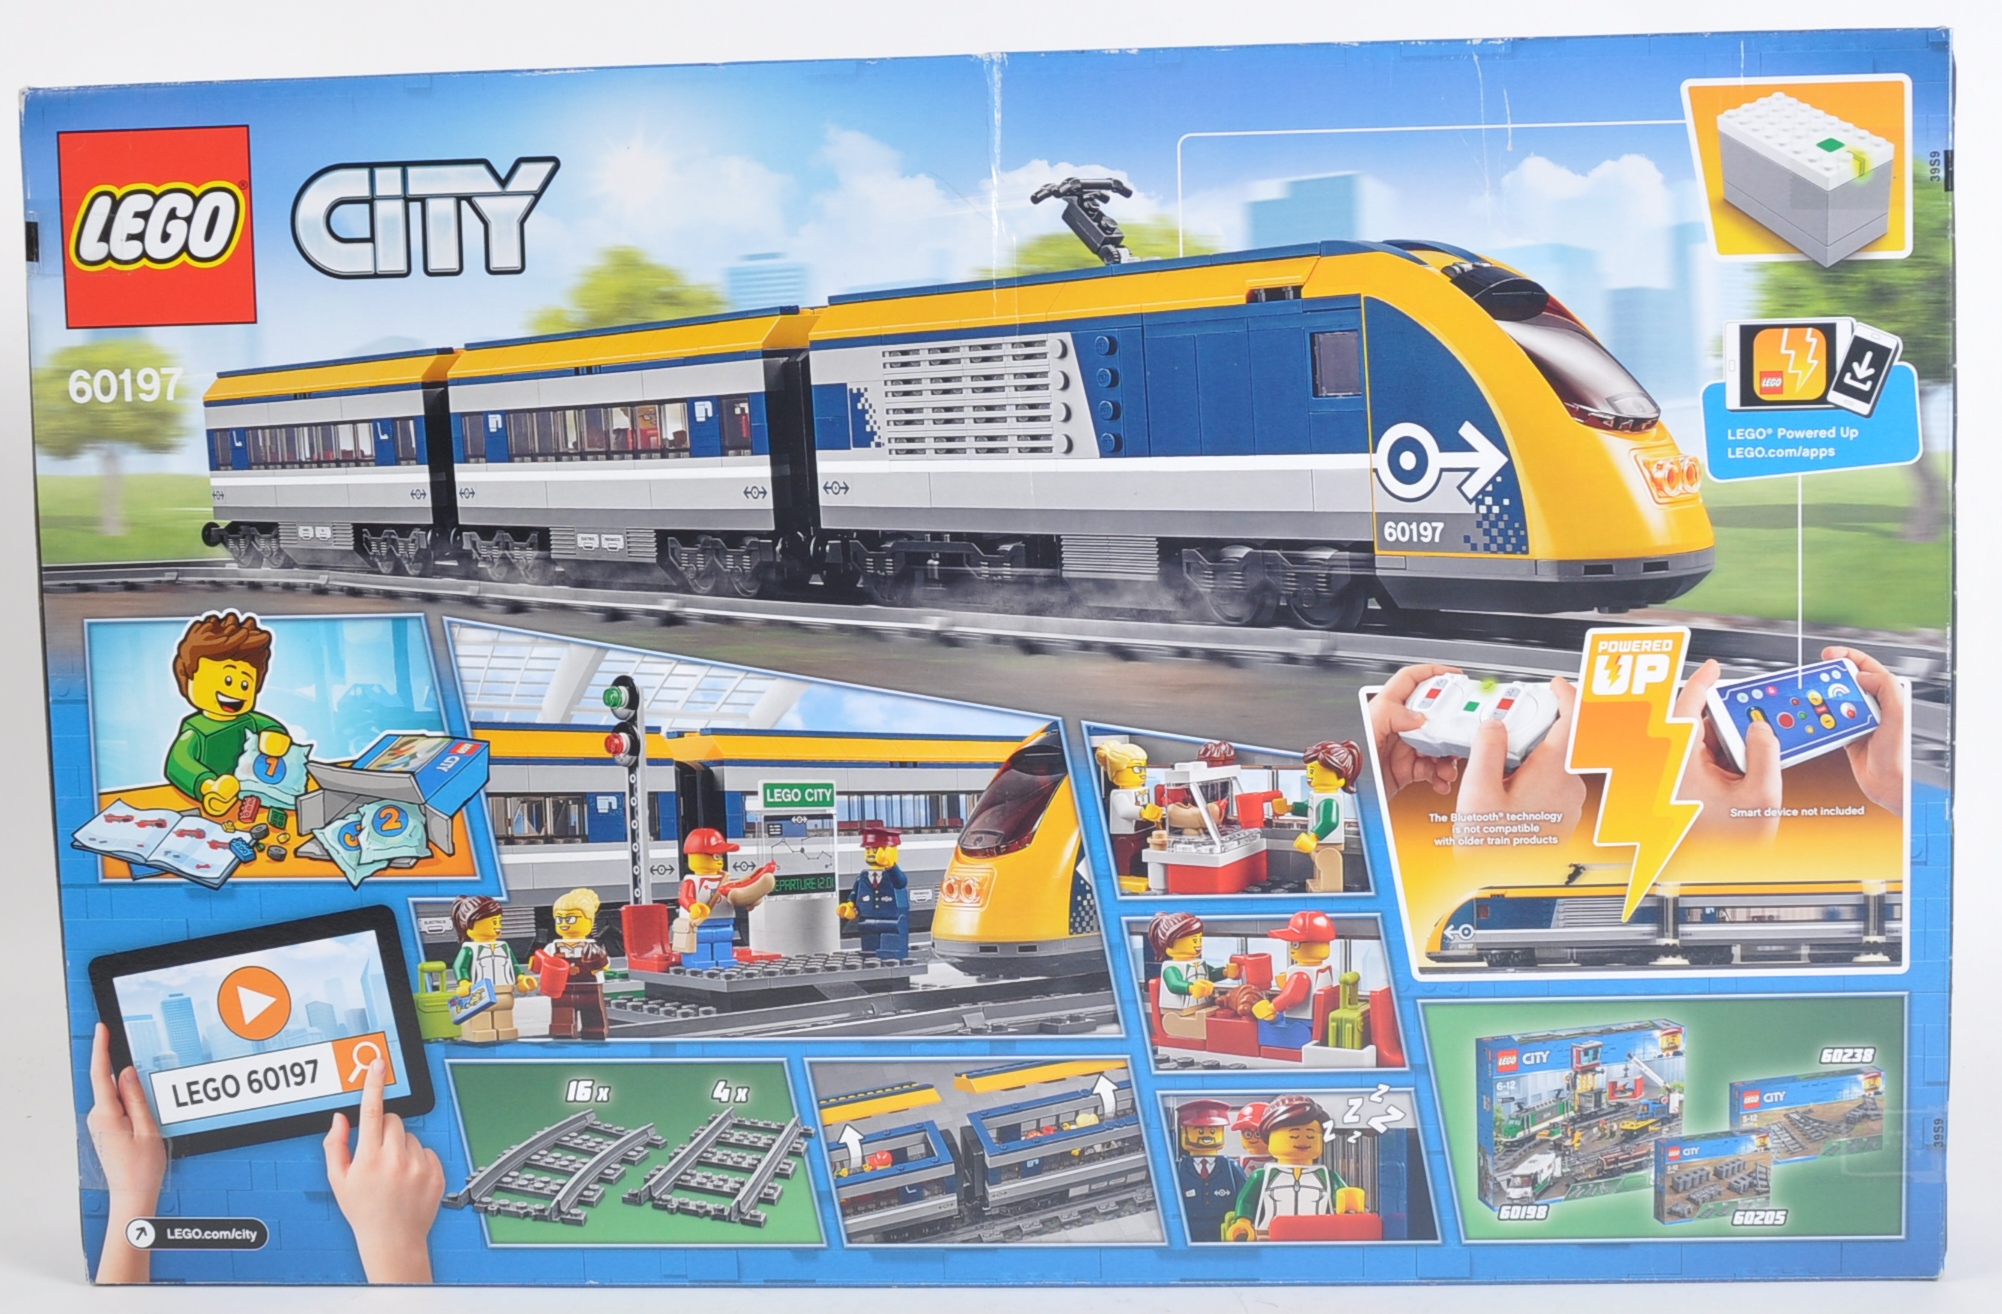 LEGO SET - LEGO CITY - 60197 - PASSENGER TRAIN - Image 2 of 4